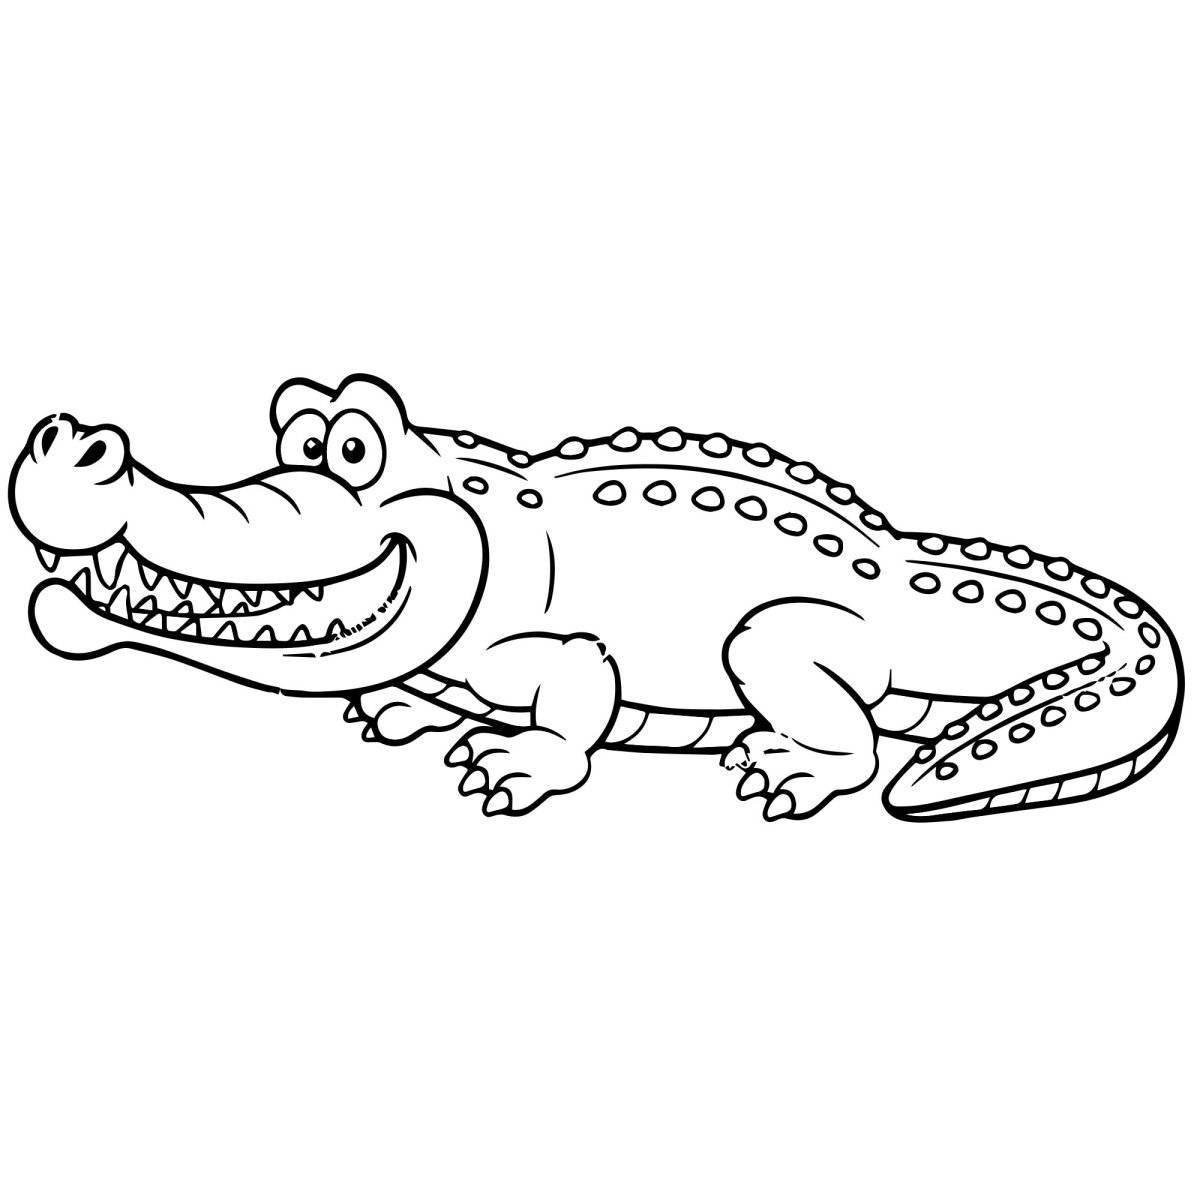 Увлекательная раскраска «крокодил» для детей 3-4 лет